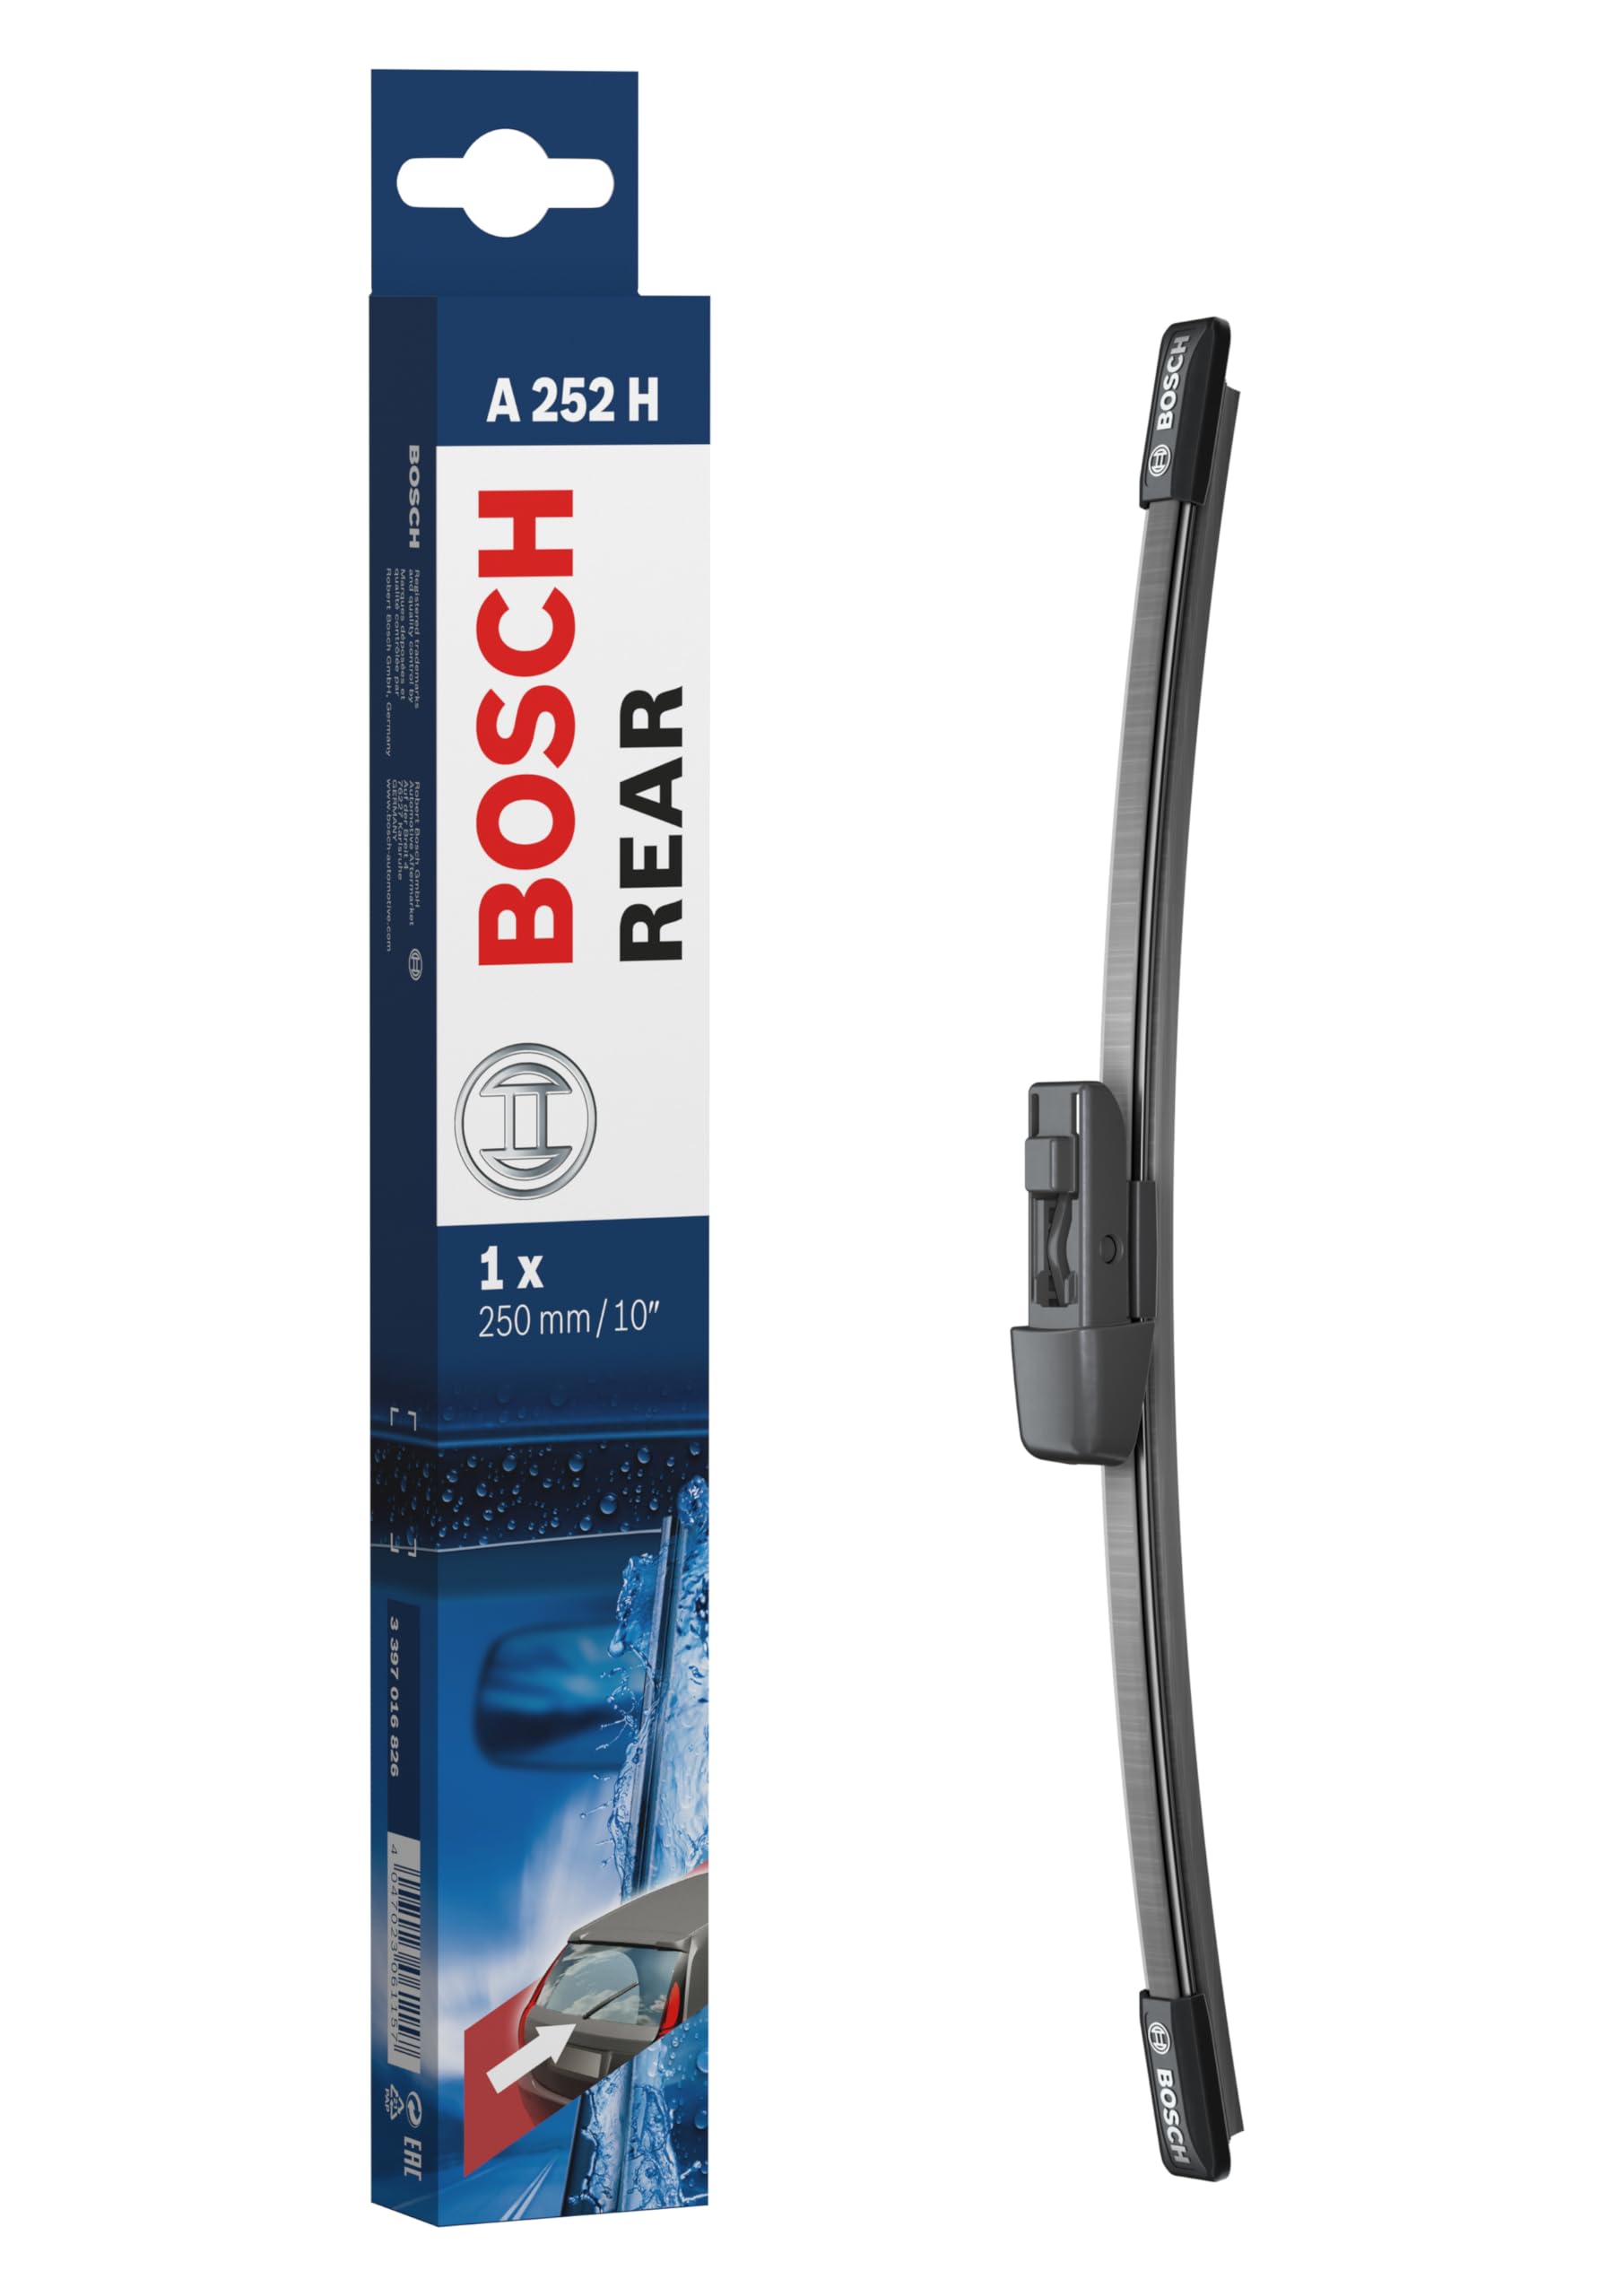 Bosch A252H - Scheibenwischer Rear - Länge: 250 mm - Scheibenwischer für Heckscheibe von Bosch